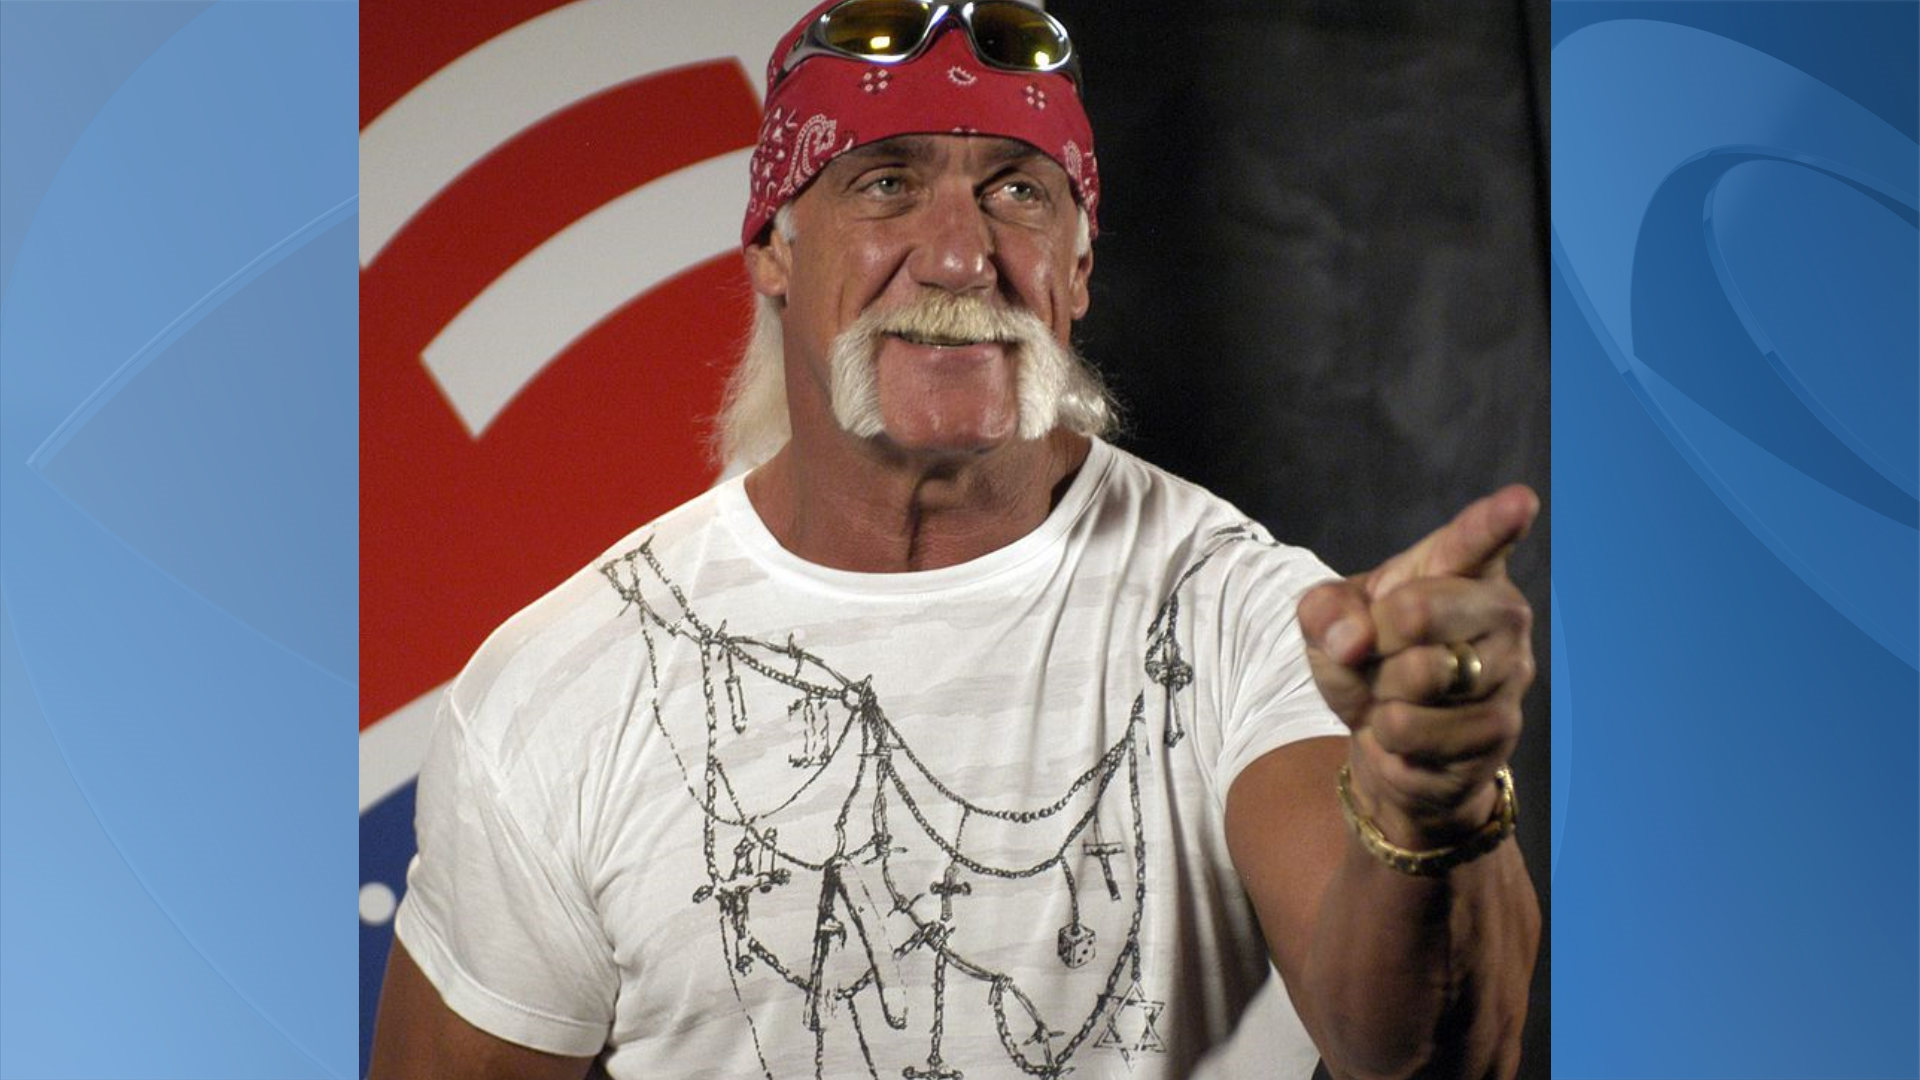 Civil trial between Hulk Hogan, website begins